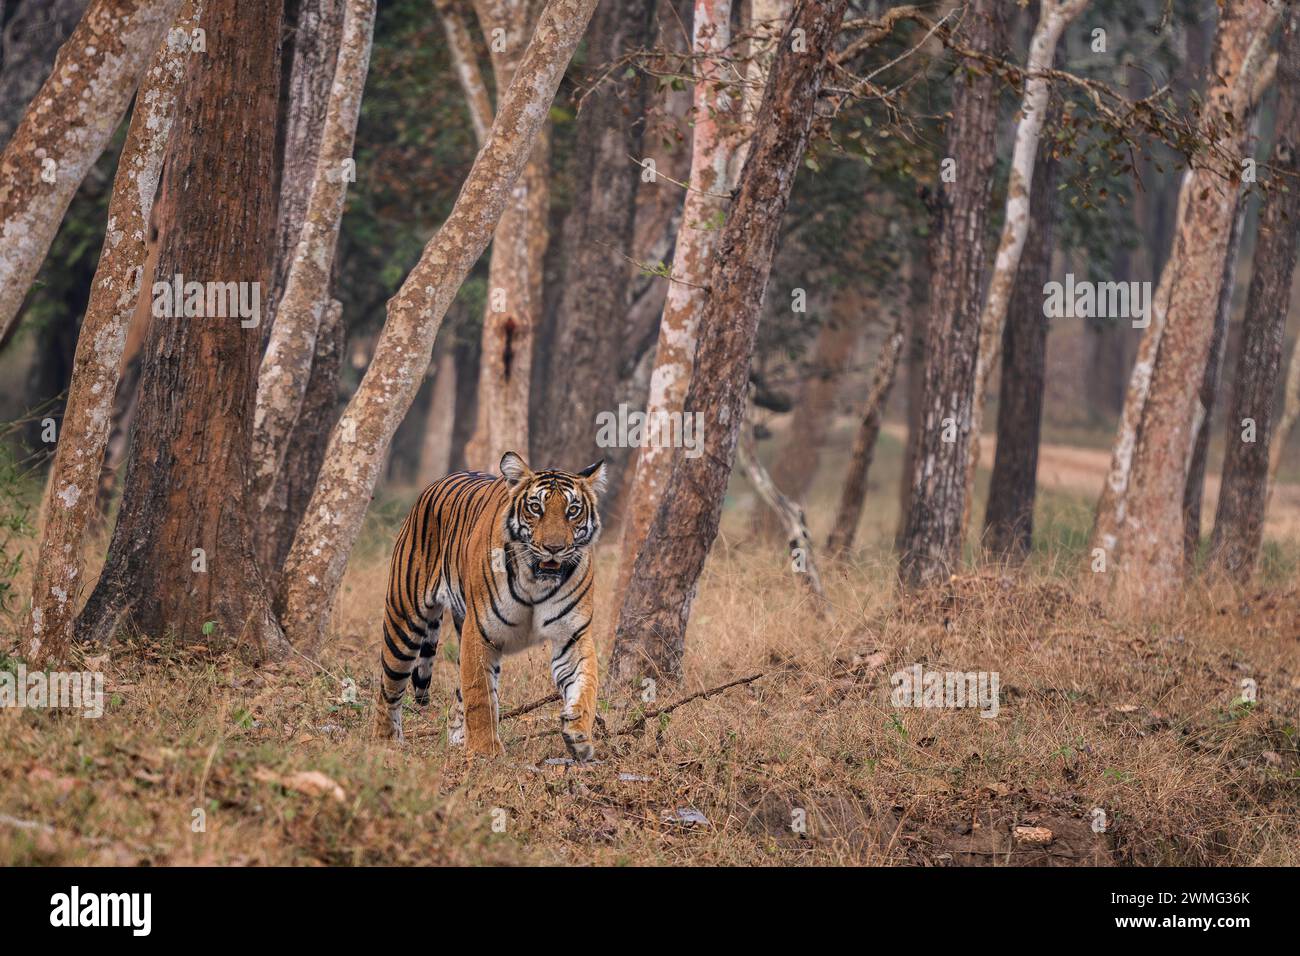 Bengalischer Tiger - Panthera Tigris tigris, schöne farbige große Katze aus südasiatischen Wäldern und Wäldern, Nagarahole Tiger Reserve, Indien. Stockfoto